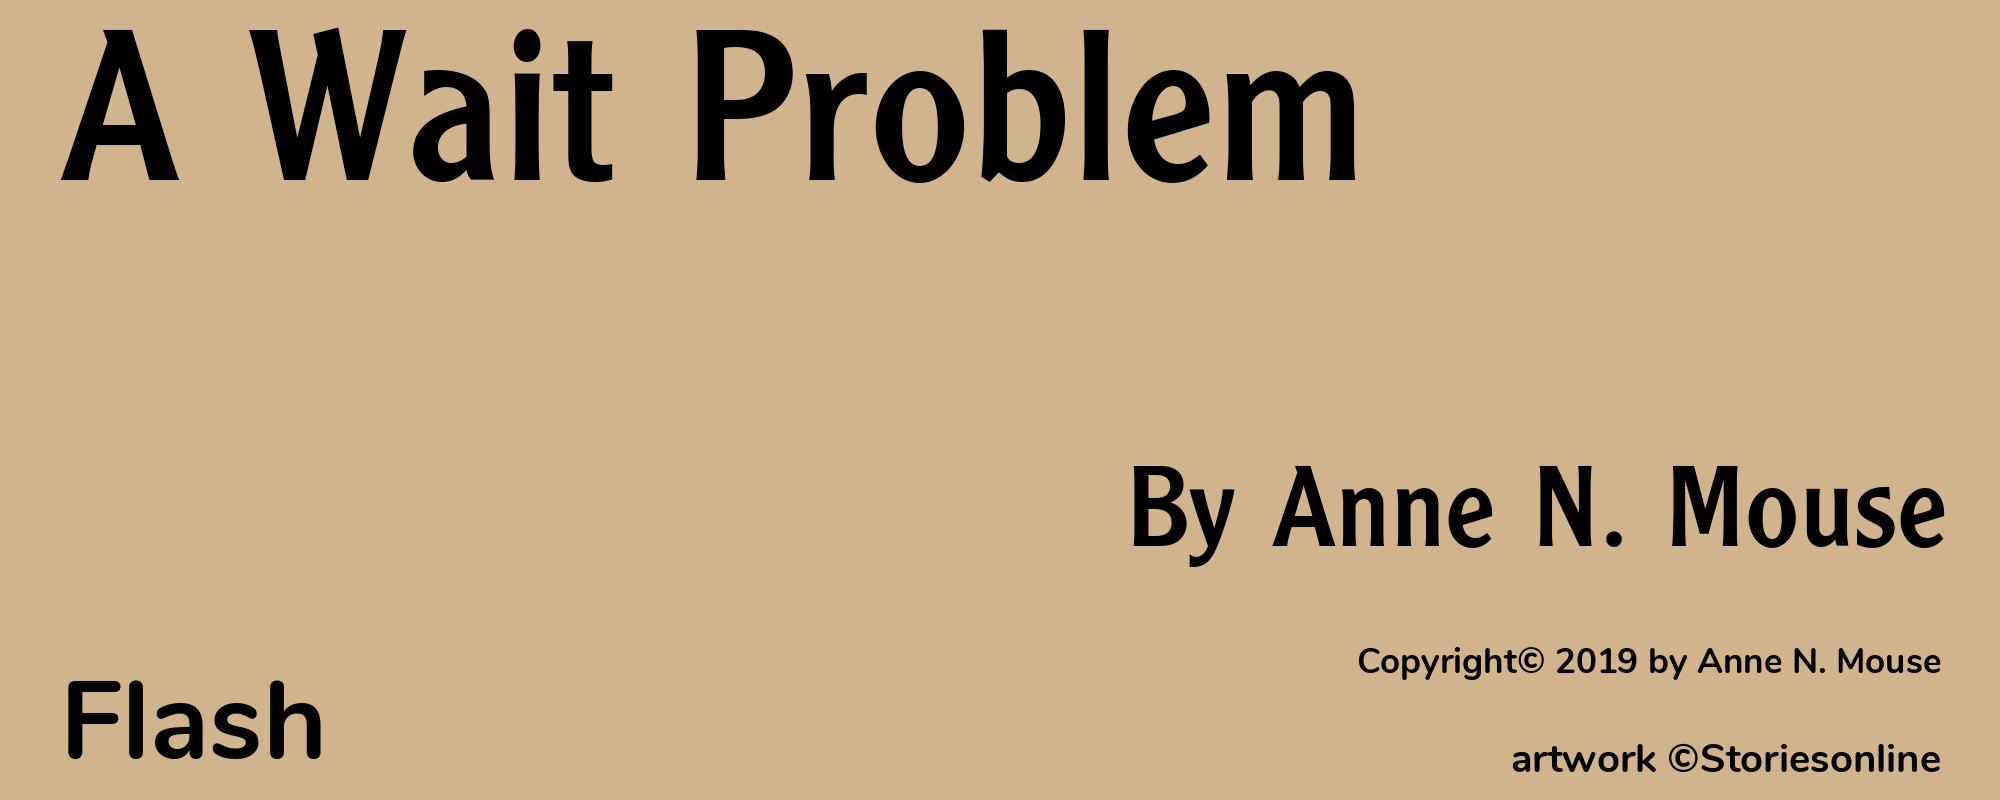 A Wait Problem - Cover